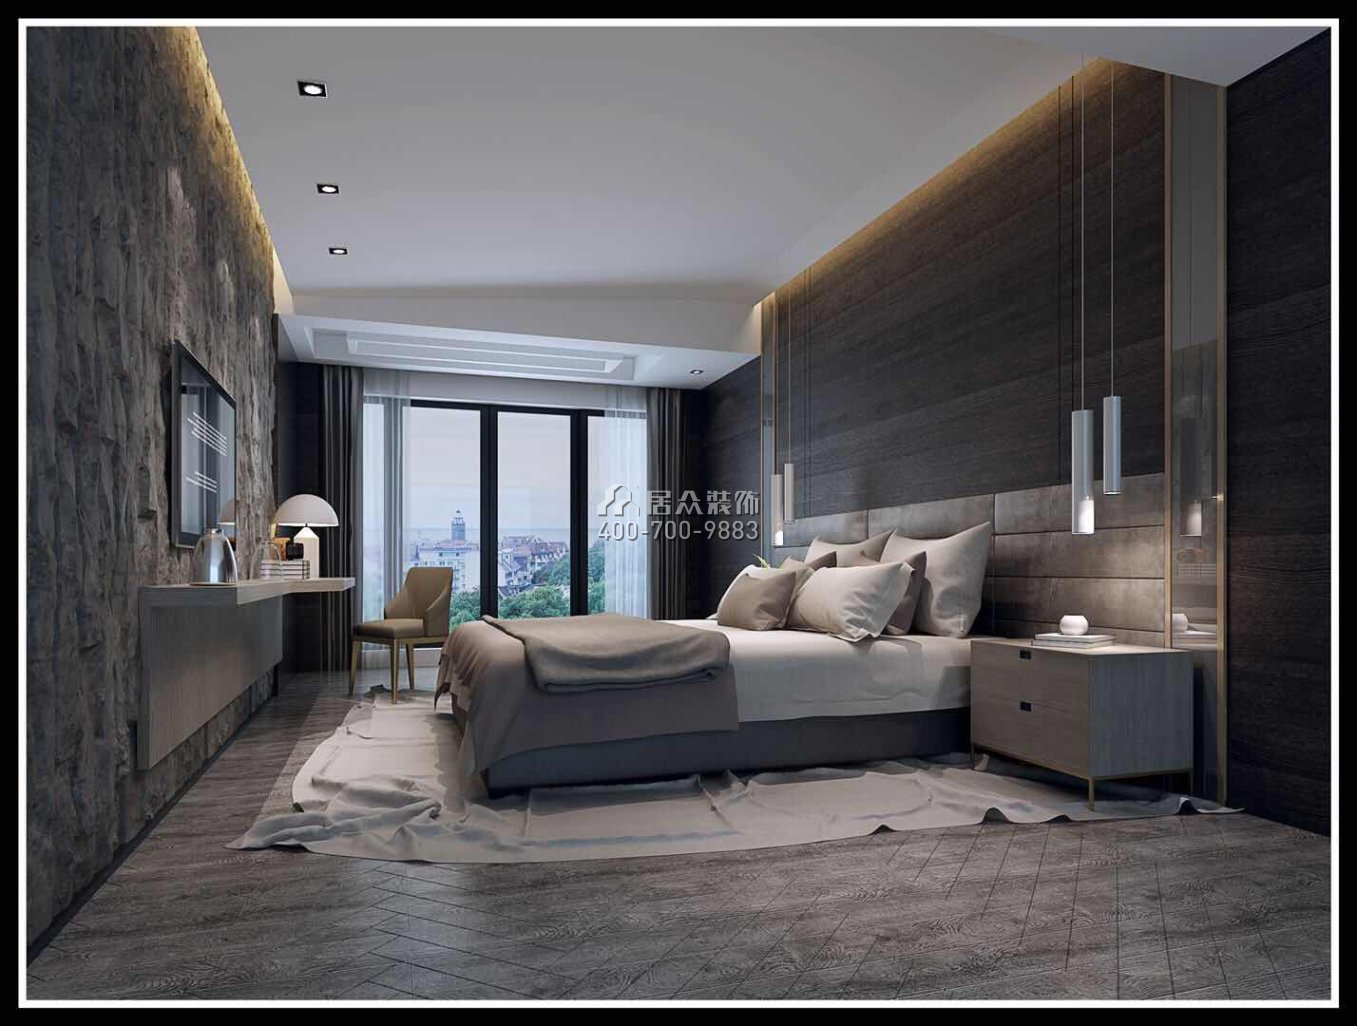 海逸豪庭御峰267平方米現代簡約風格別墅戶型臥室裝修效果圖